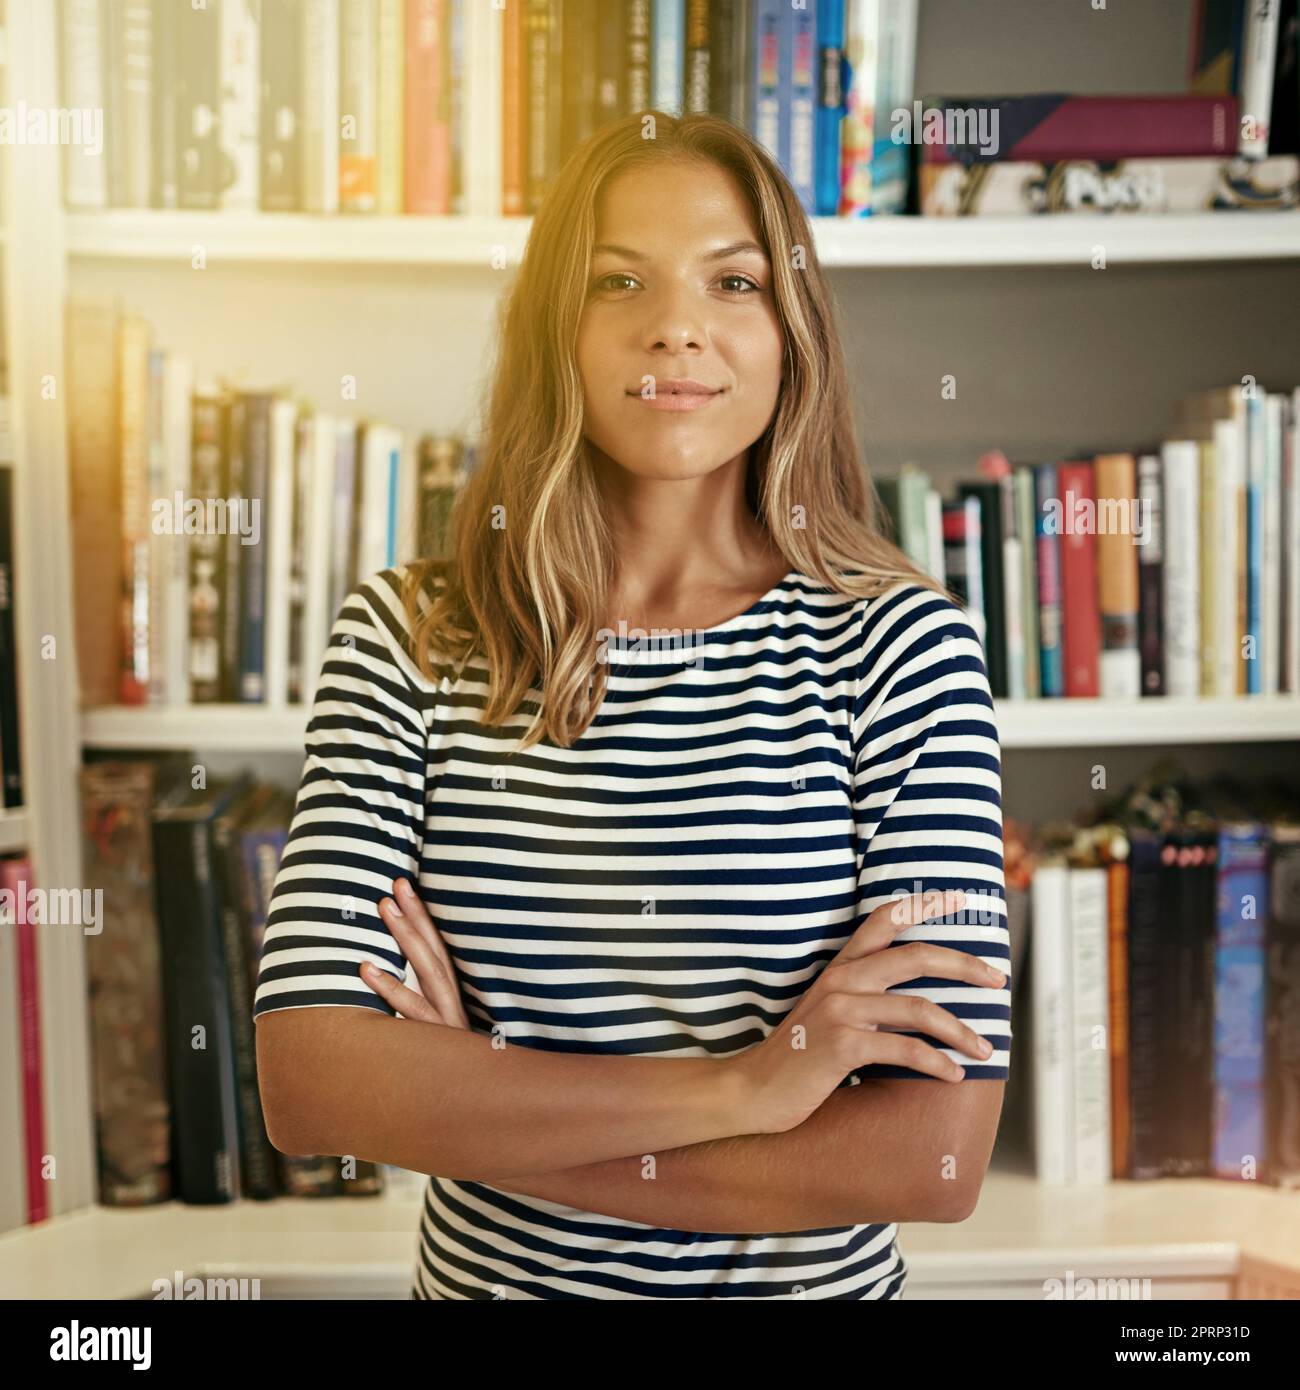 Genießen Sie die Freiheit des Freiberufens. Porträt einer Frau, die in ihrem Heimbüro vor Bücherregalen steht. Stockfoto